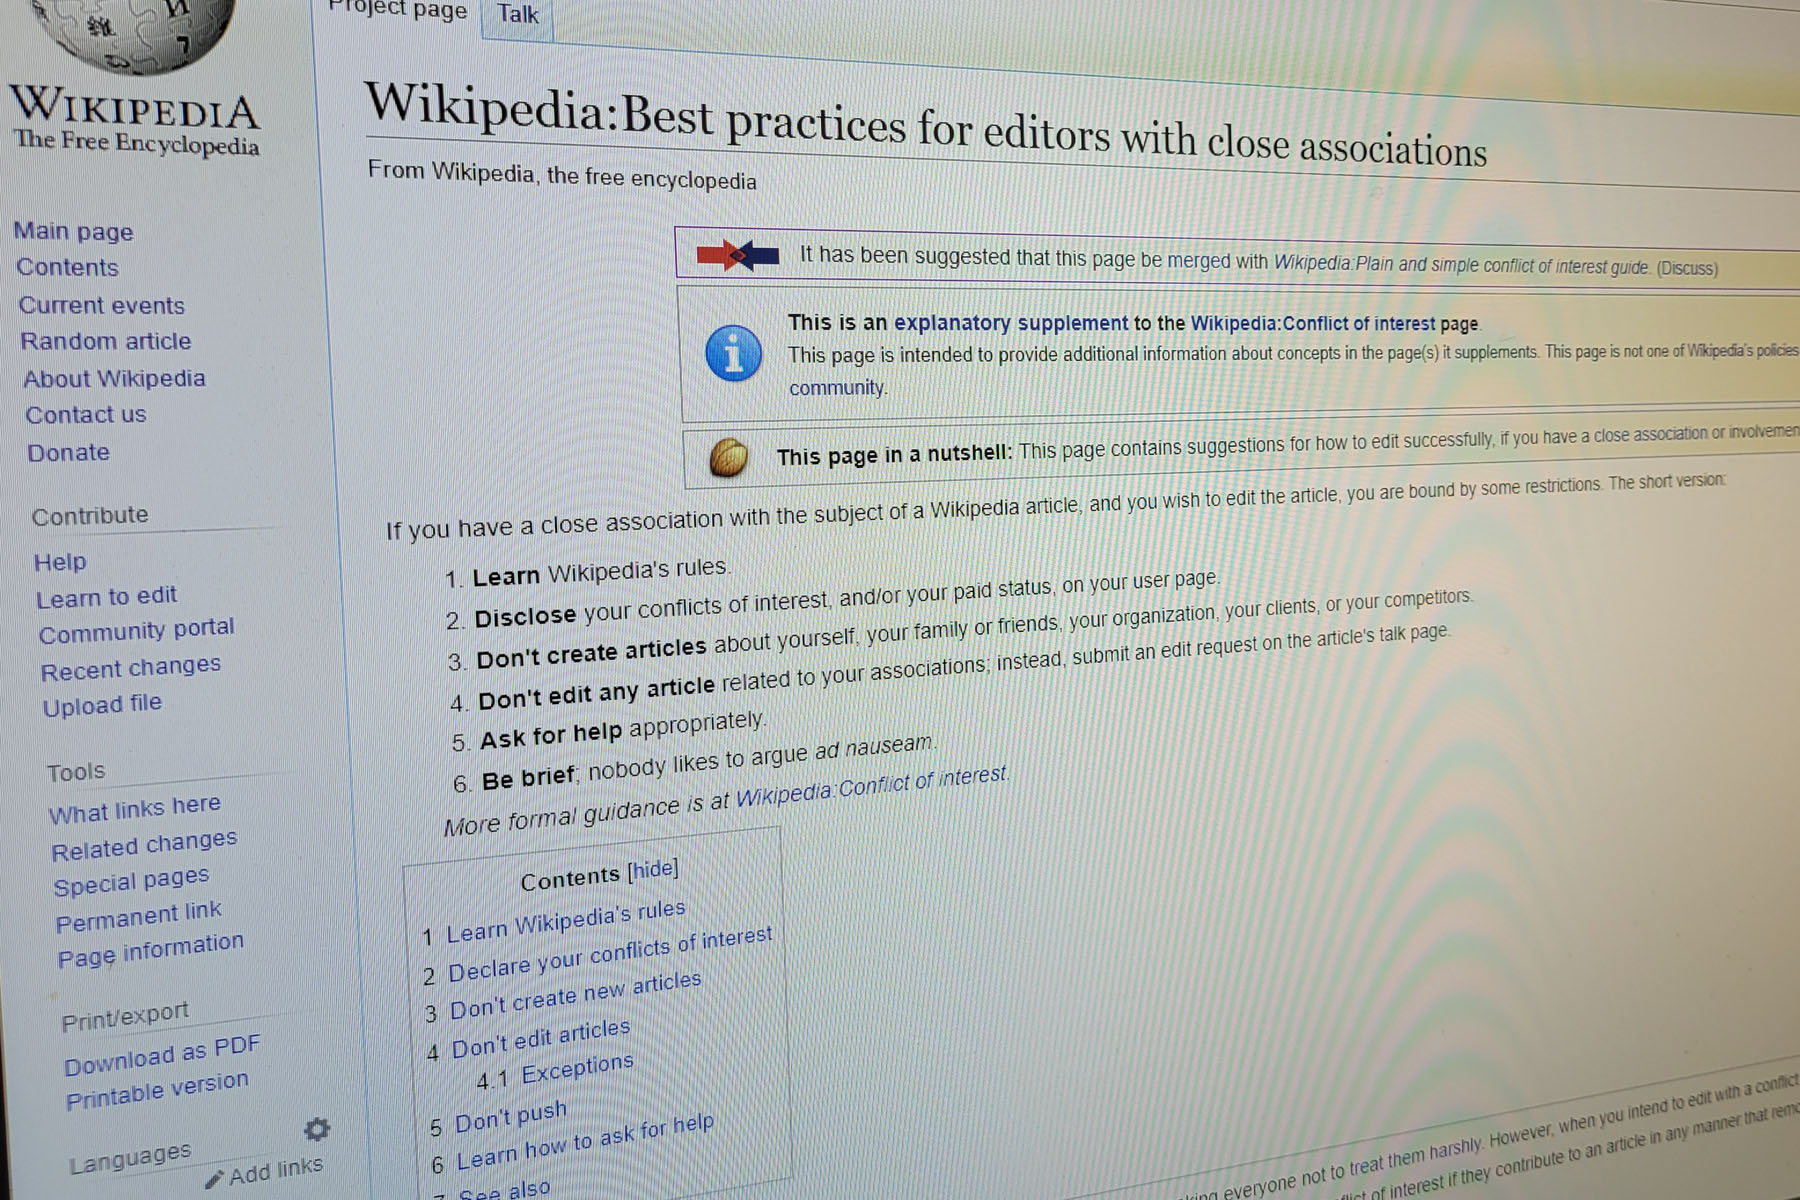 LVMH - Wikipedia